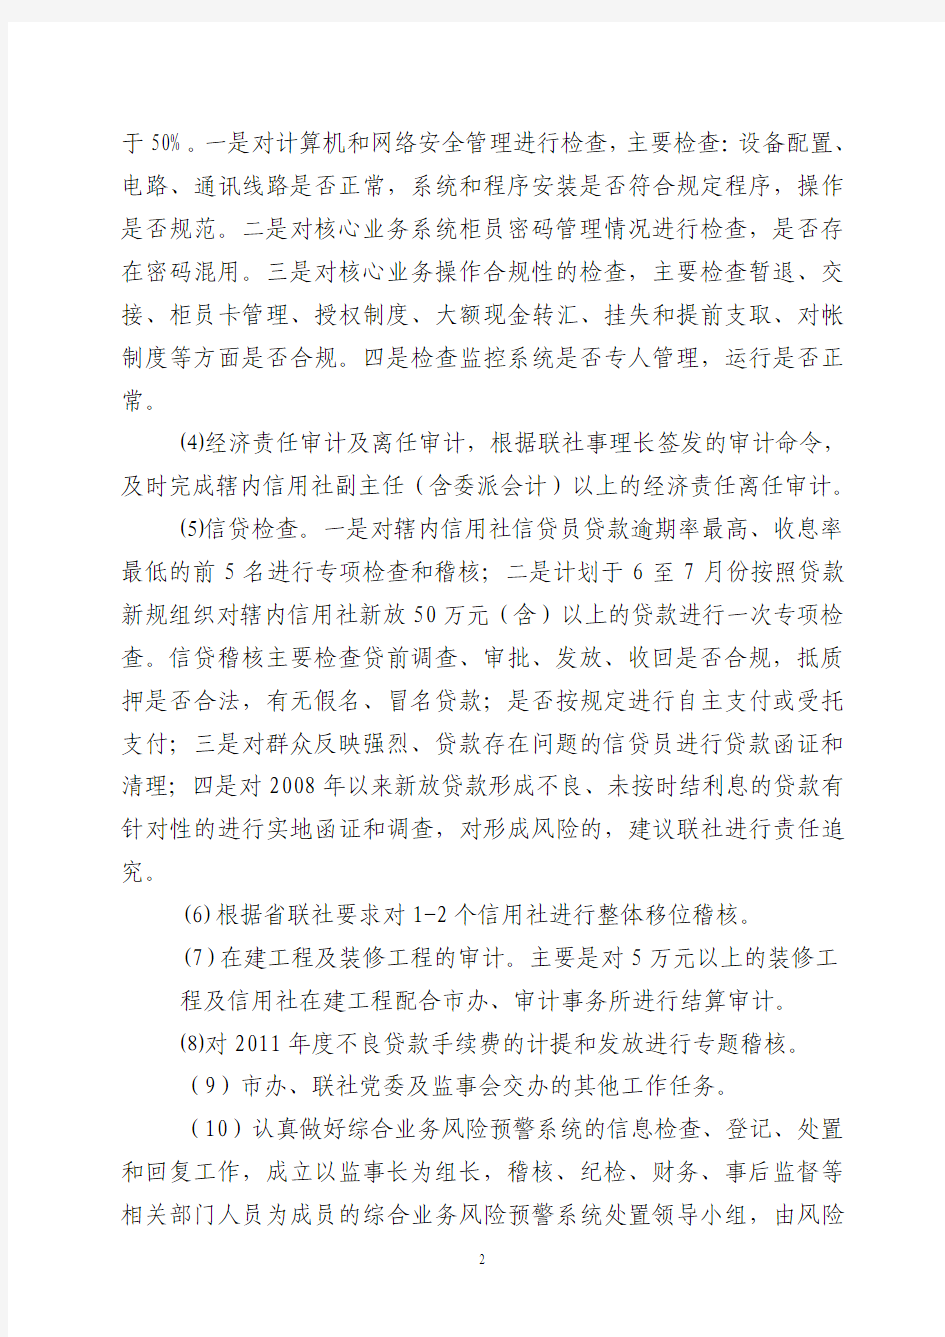 邵西县农村信用联社2012年稽核工作意见  26